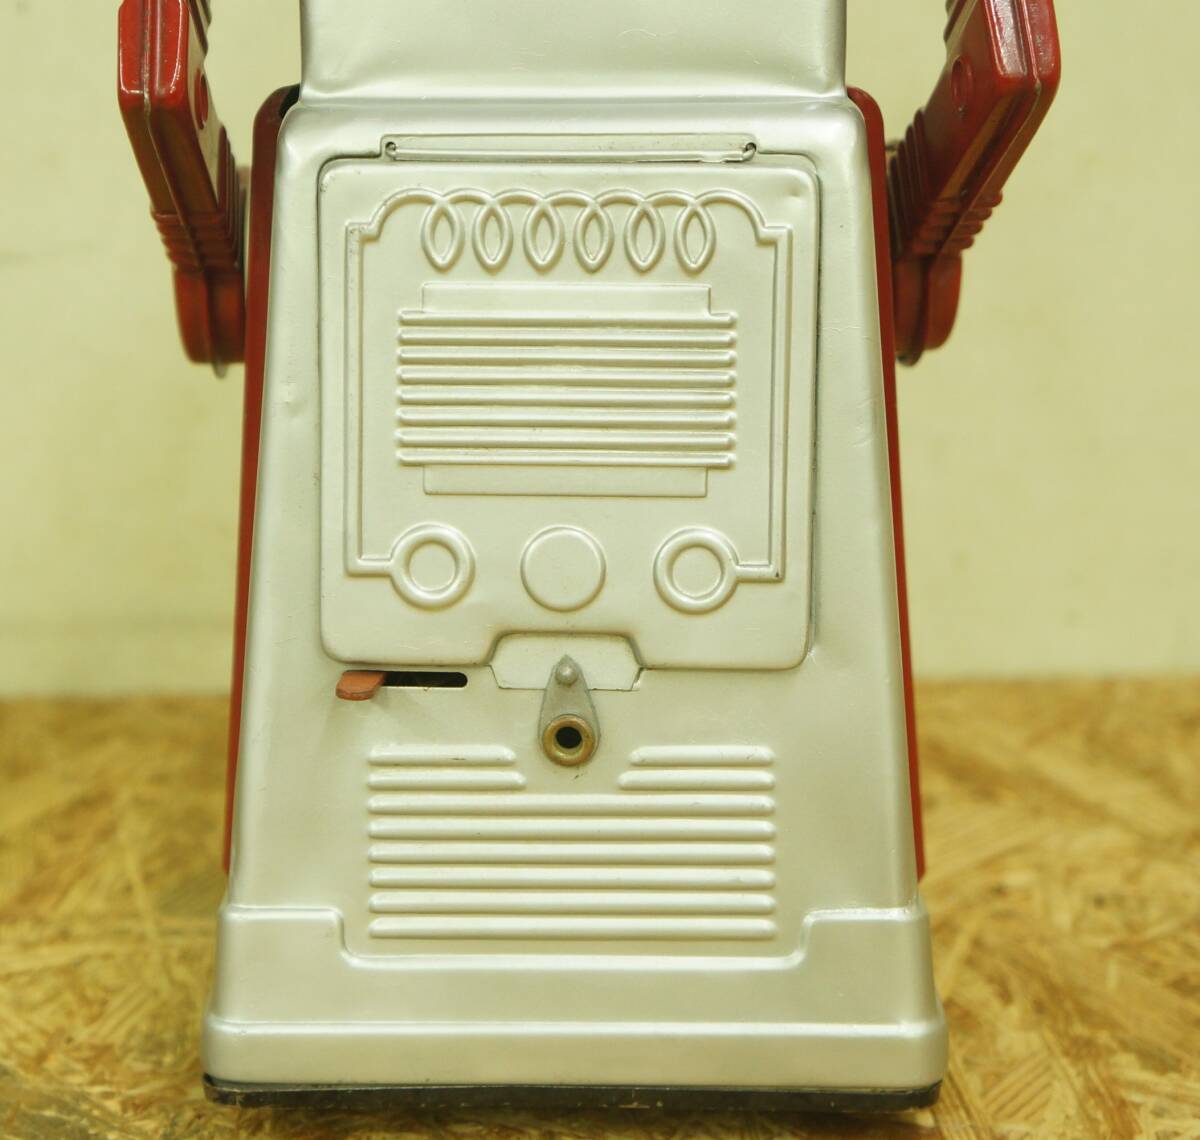  chief робот man yosiya подлинная вещь retro Vintage жестяная пластина текущее состояние товар 